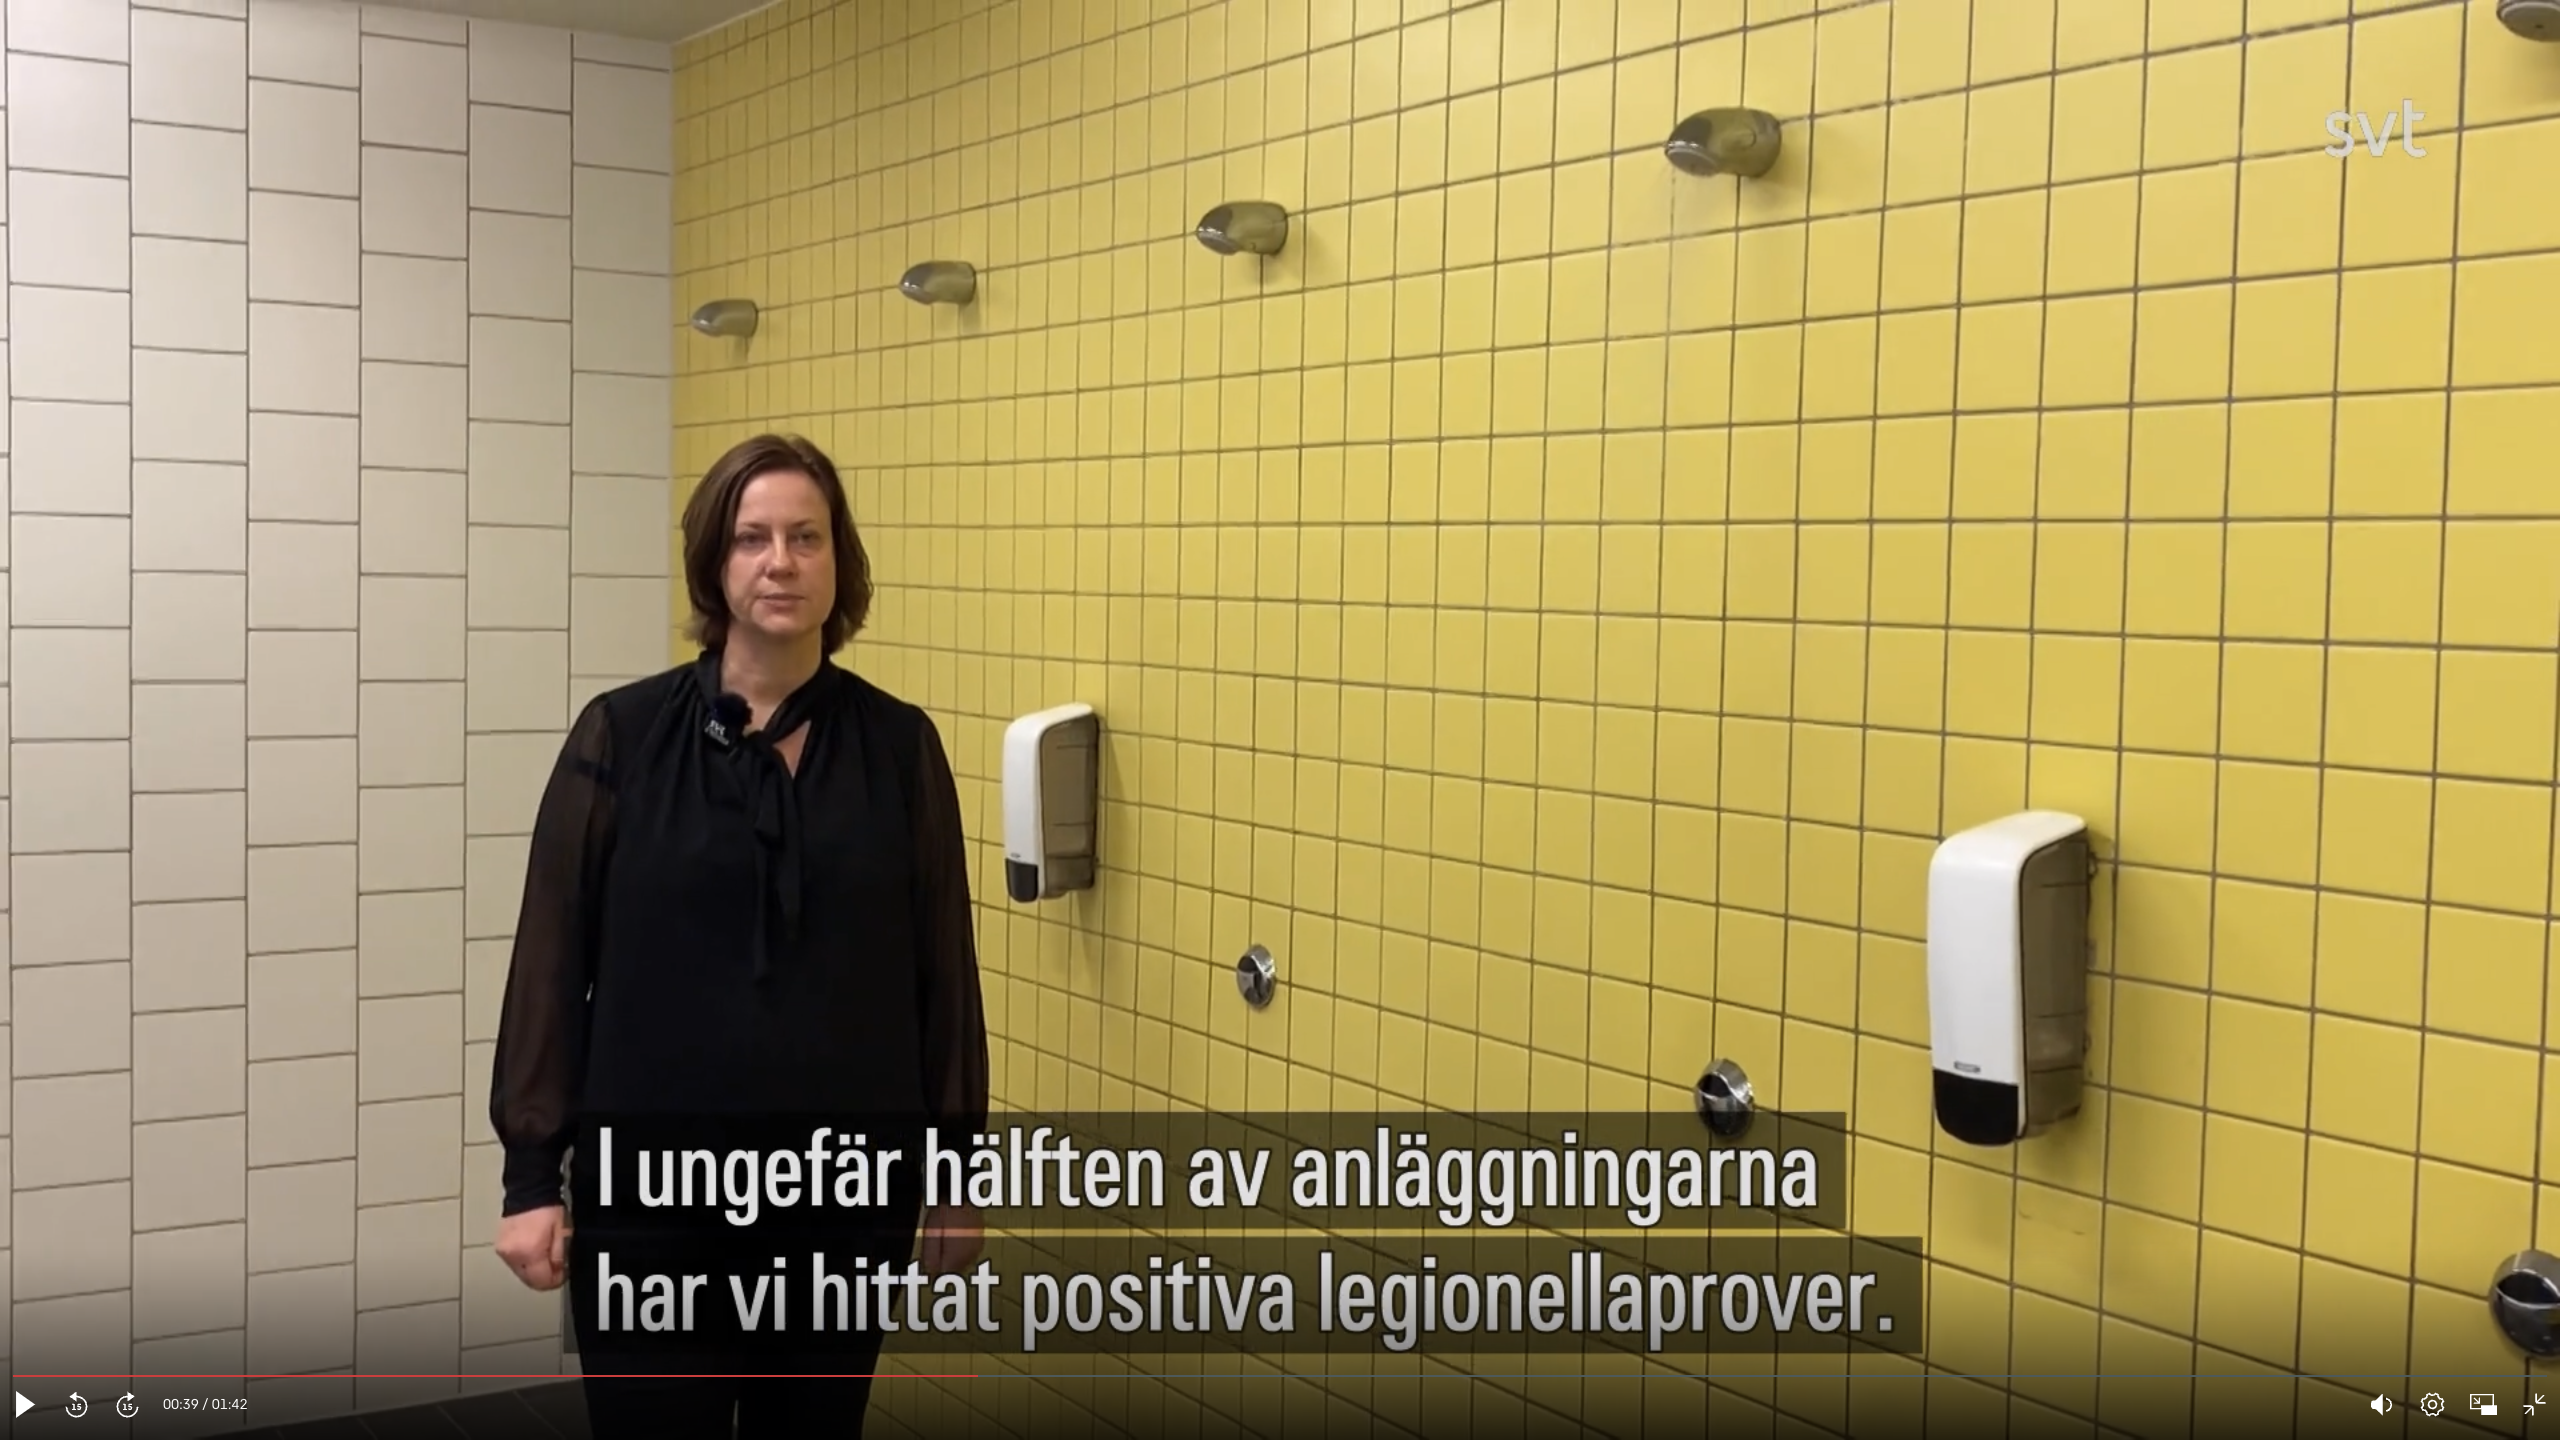 Legionella vanligt i duschar på Stockholms badanläggningar